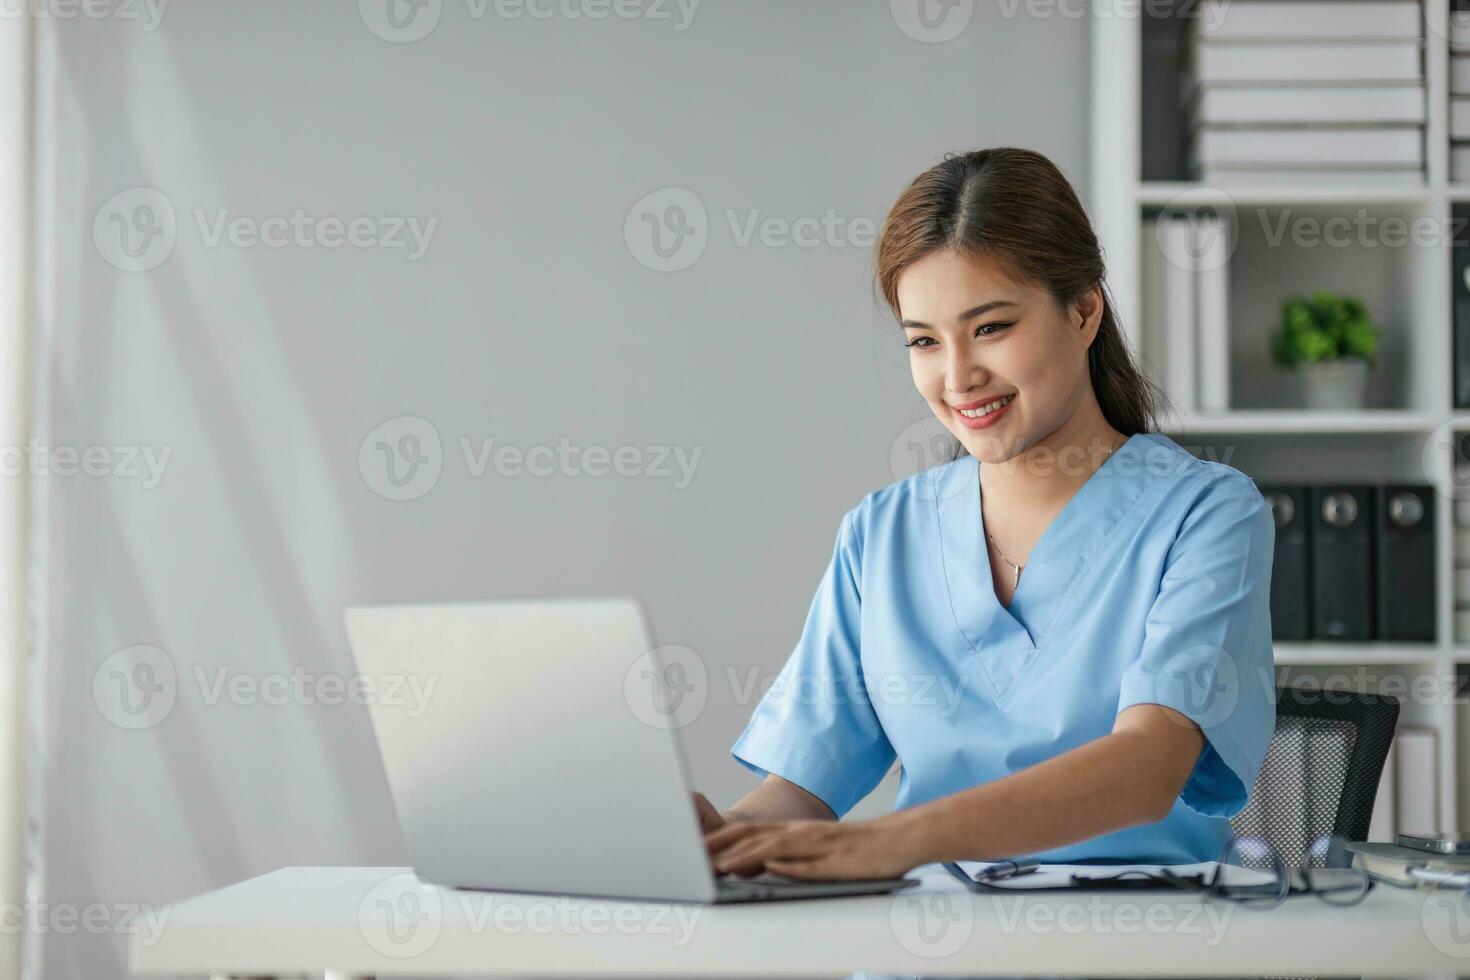 Aziatisch dokter jong mooi vrouw glimlachen gebruik makend van werken met een laptop computer en haar schrijven iets Aan papierwerk of klembord wit papier Bij ziekenhuis bureau kantoor, gezondheidszorg medisch concept foto